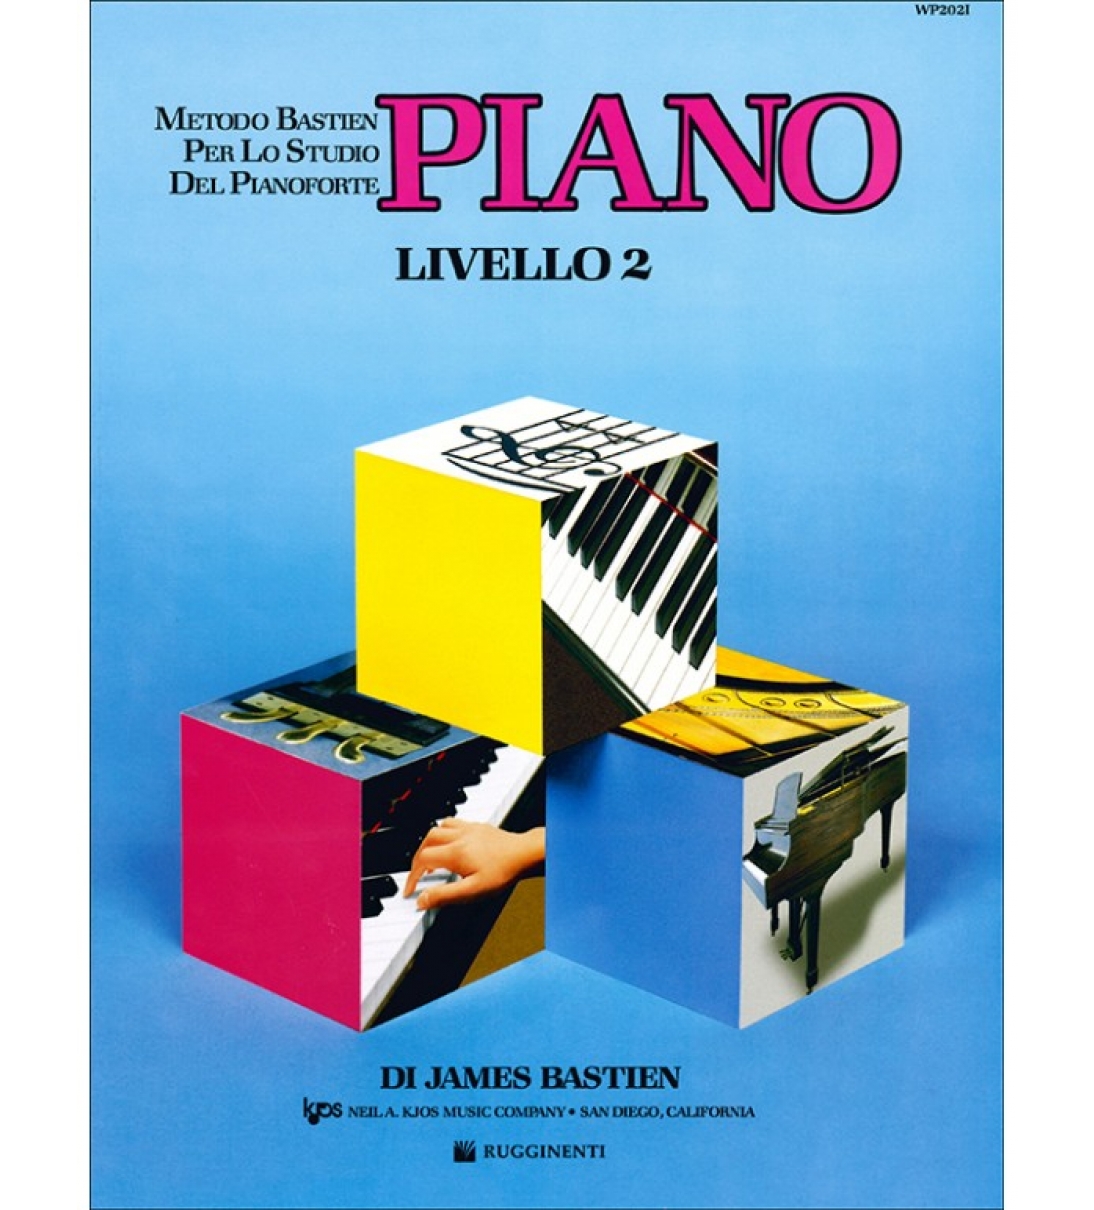 PIANO LIVELLO II - JAMES BASTIEN